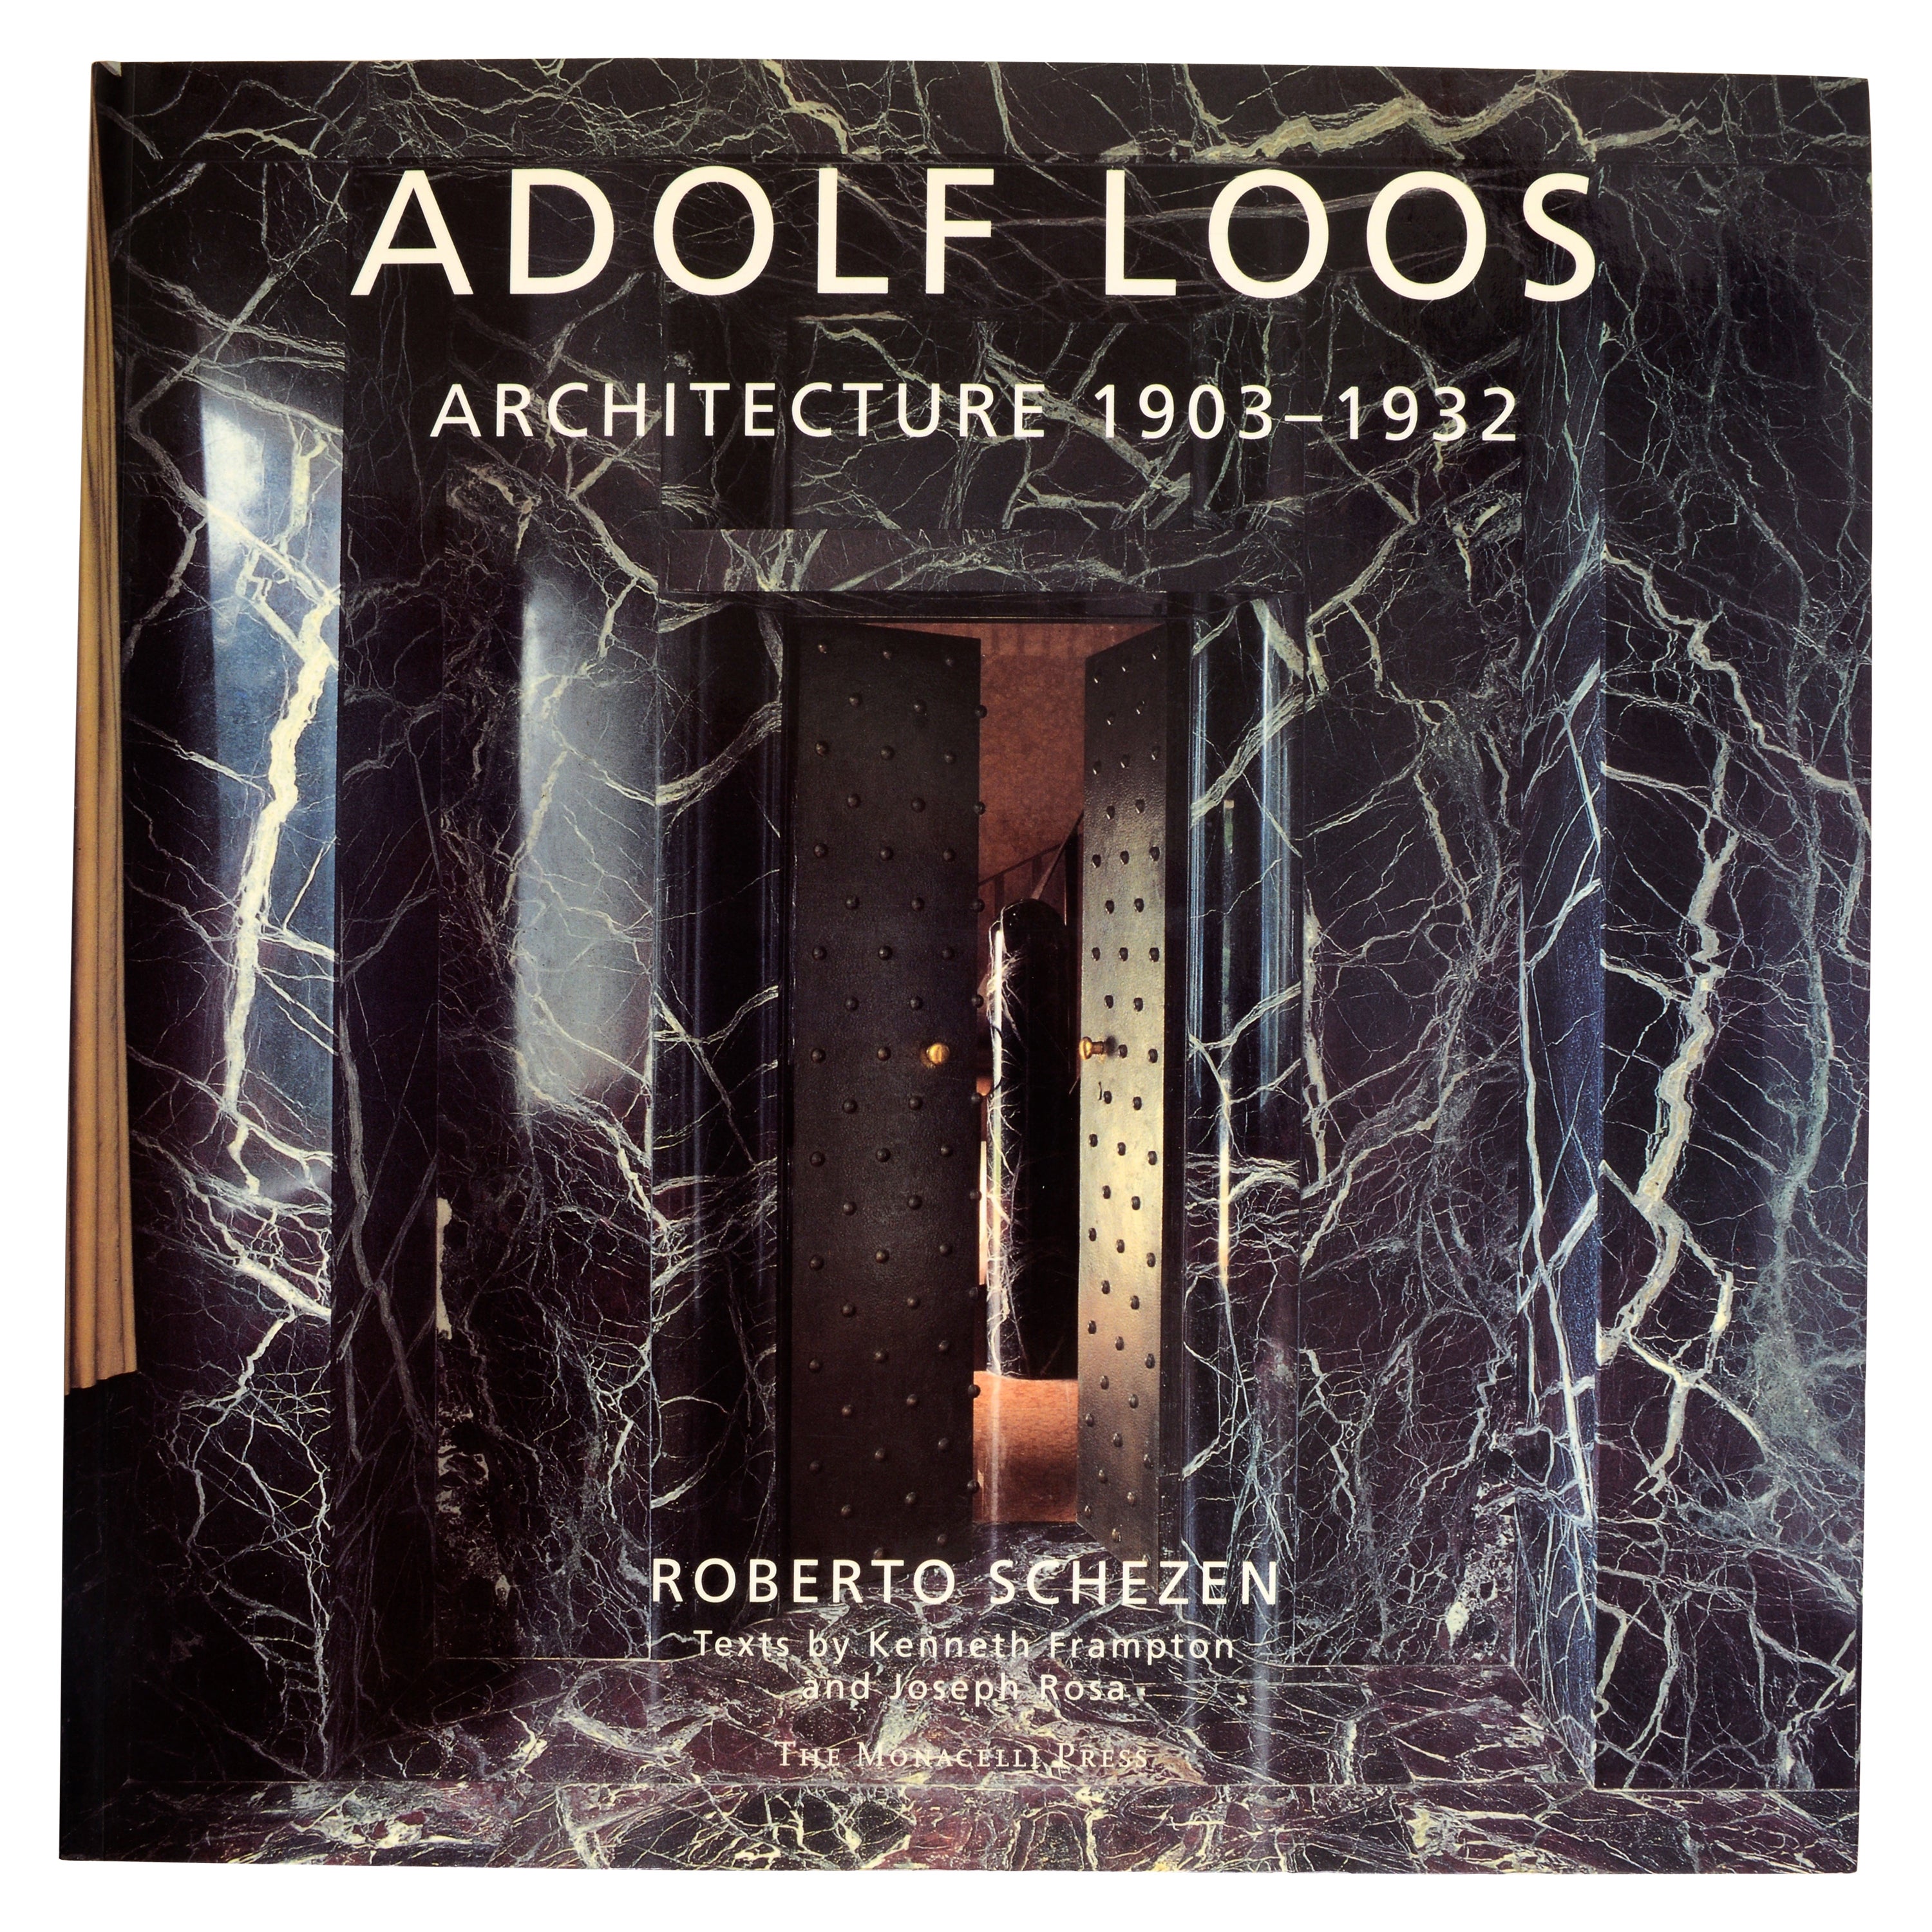 Adolf Loos Architecture 1903-1932 by Roberto Schezen